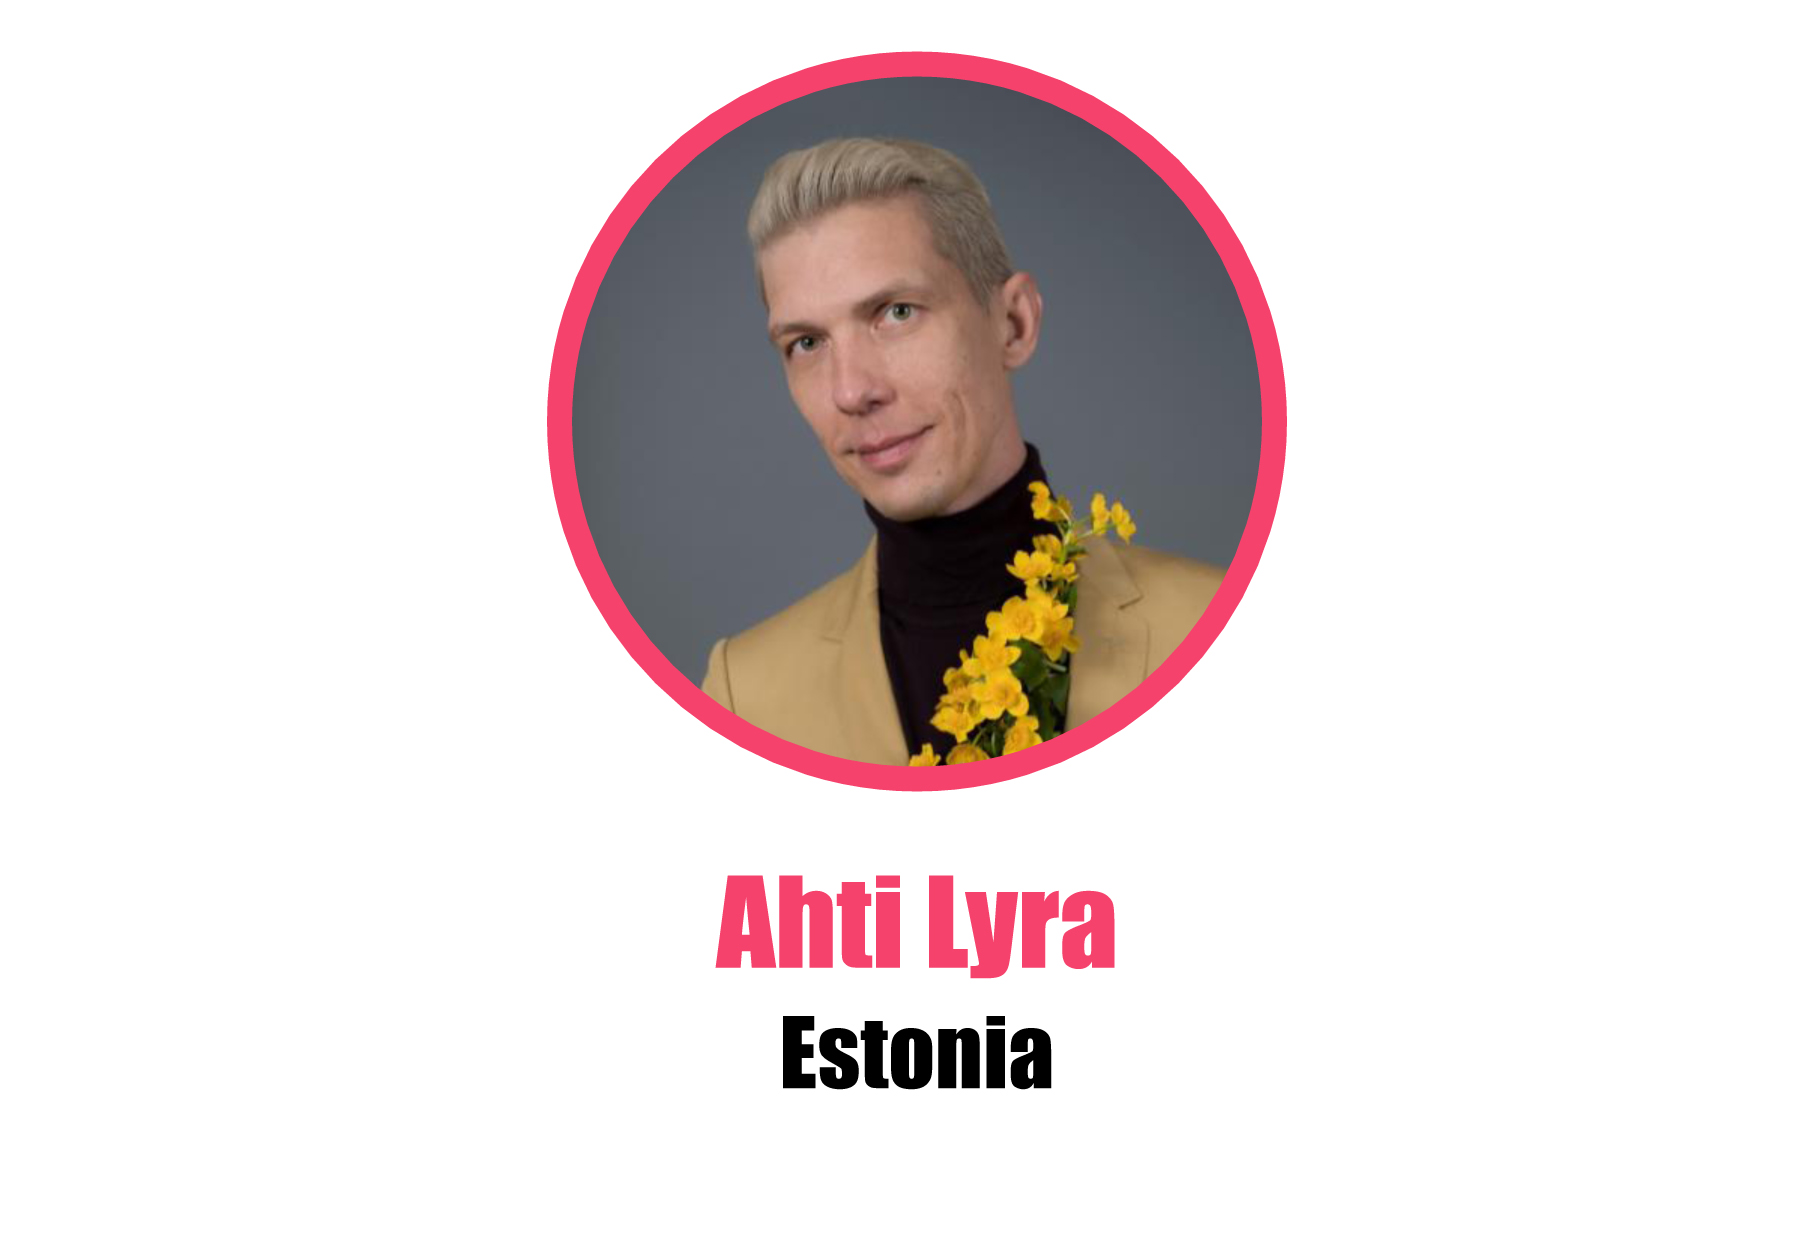 Estonia_Ahti Lyra